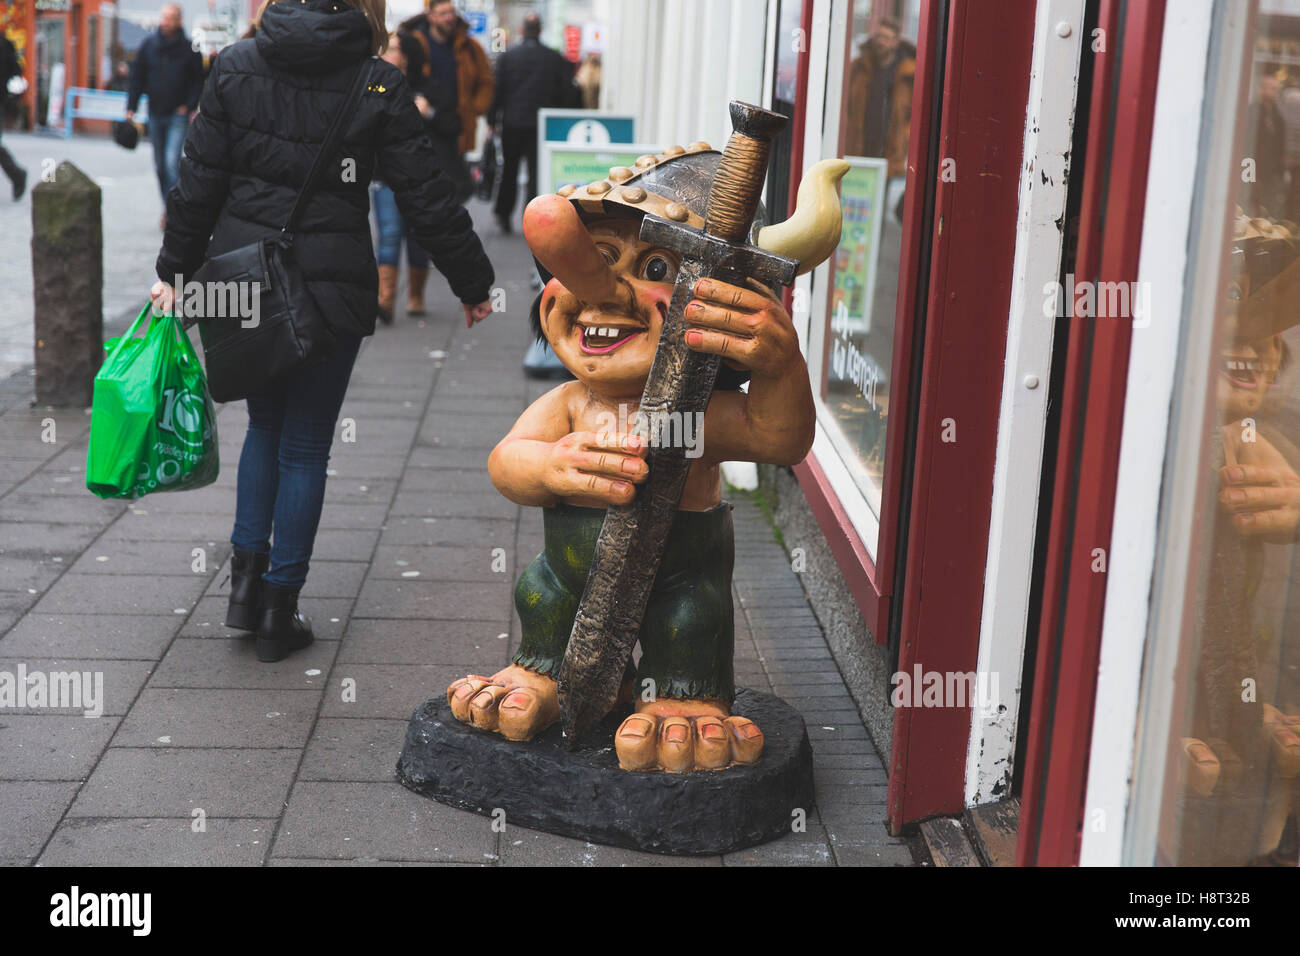 Troll figure outside souvenir shop in Reykjavik, Iceland. Stock Photo